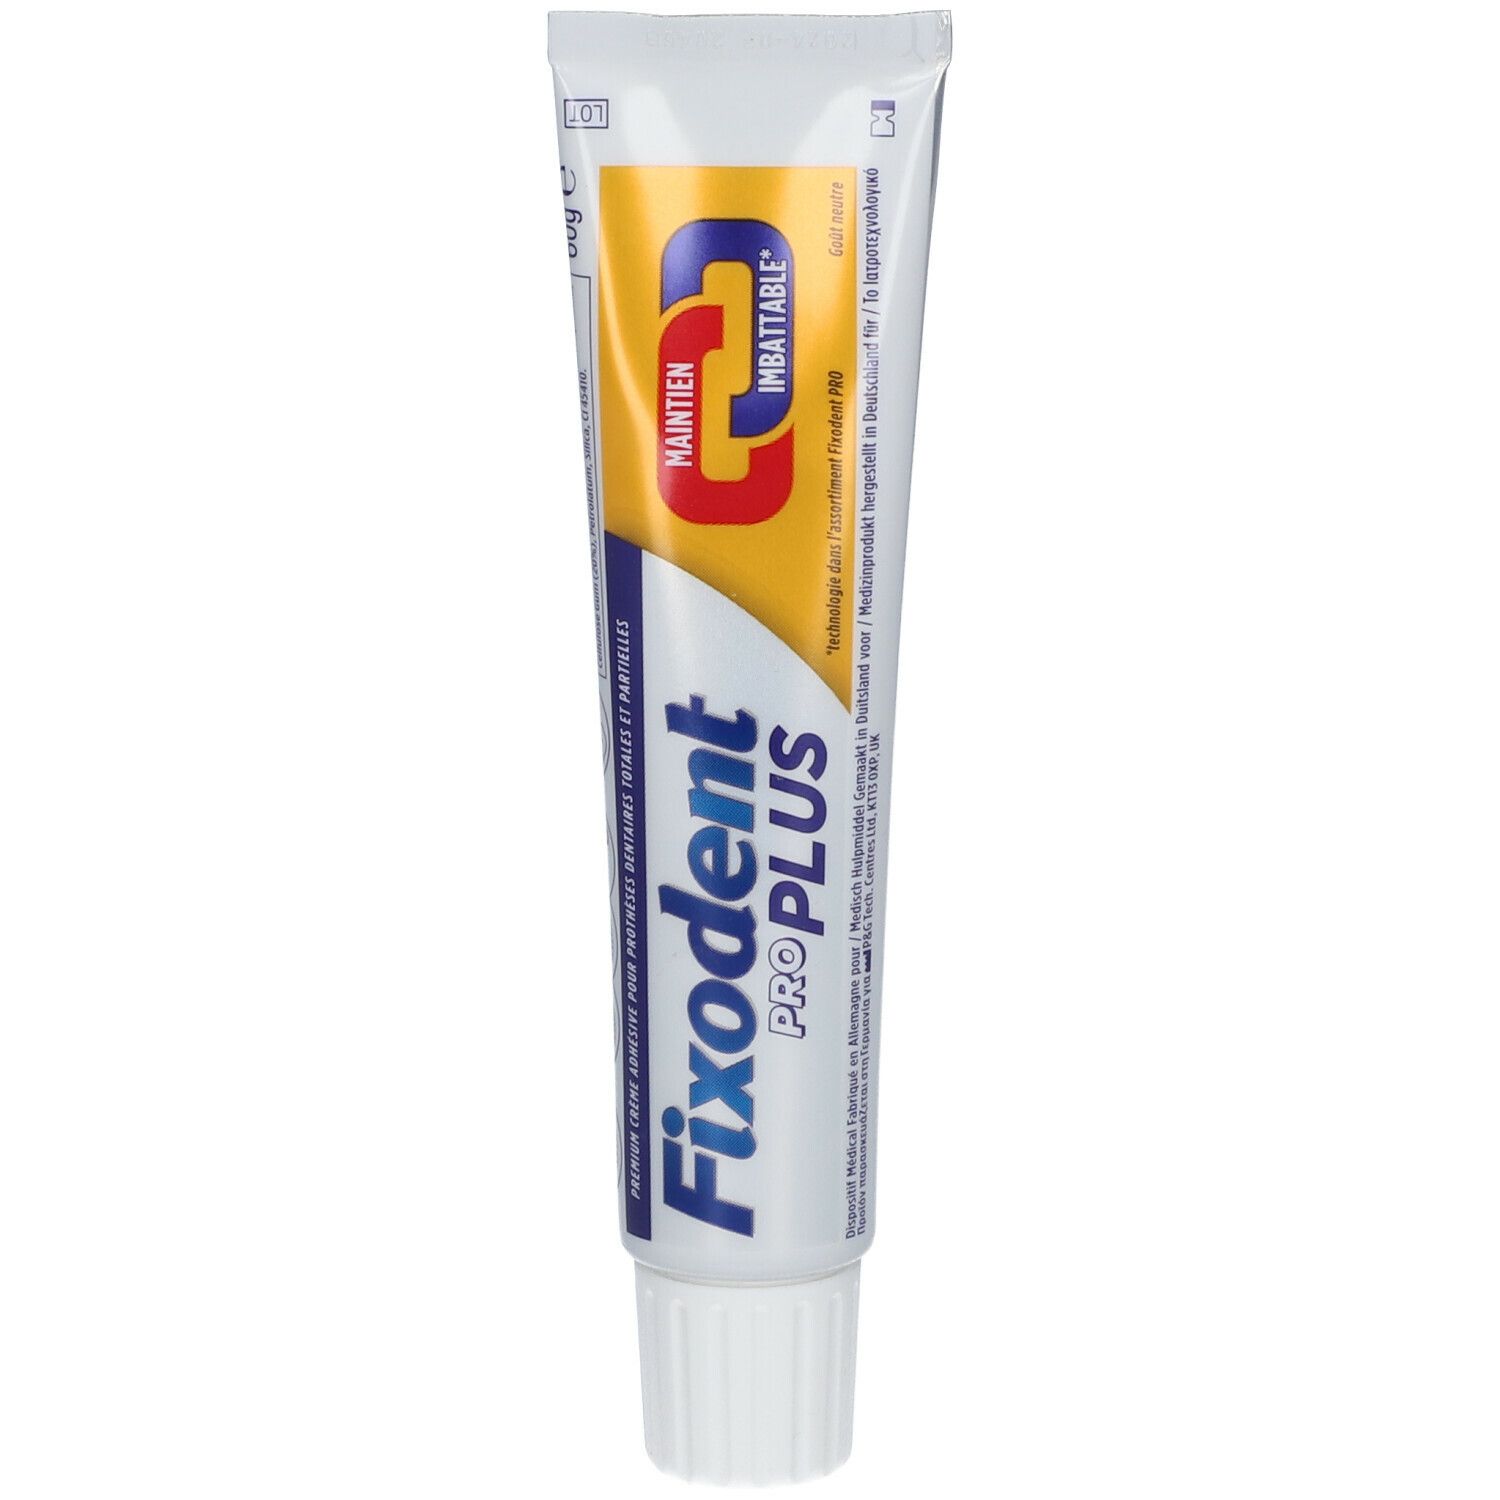 Fixodent Pro Plus Maintien Imbattable - Crème Adhésive Pour Prothèses Dentaires